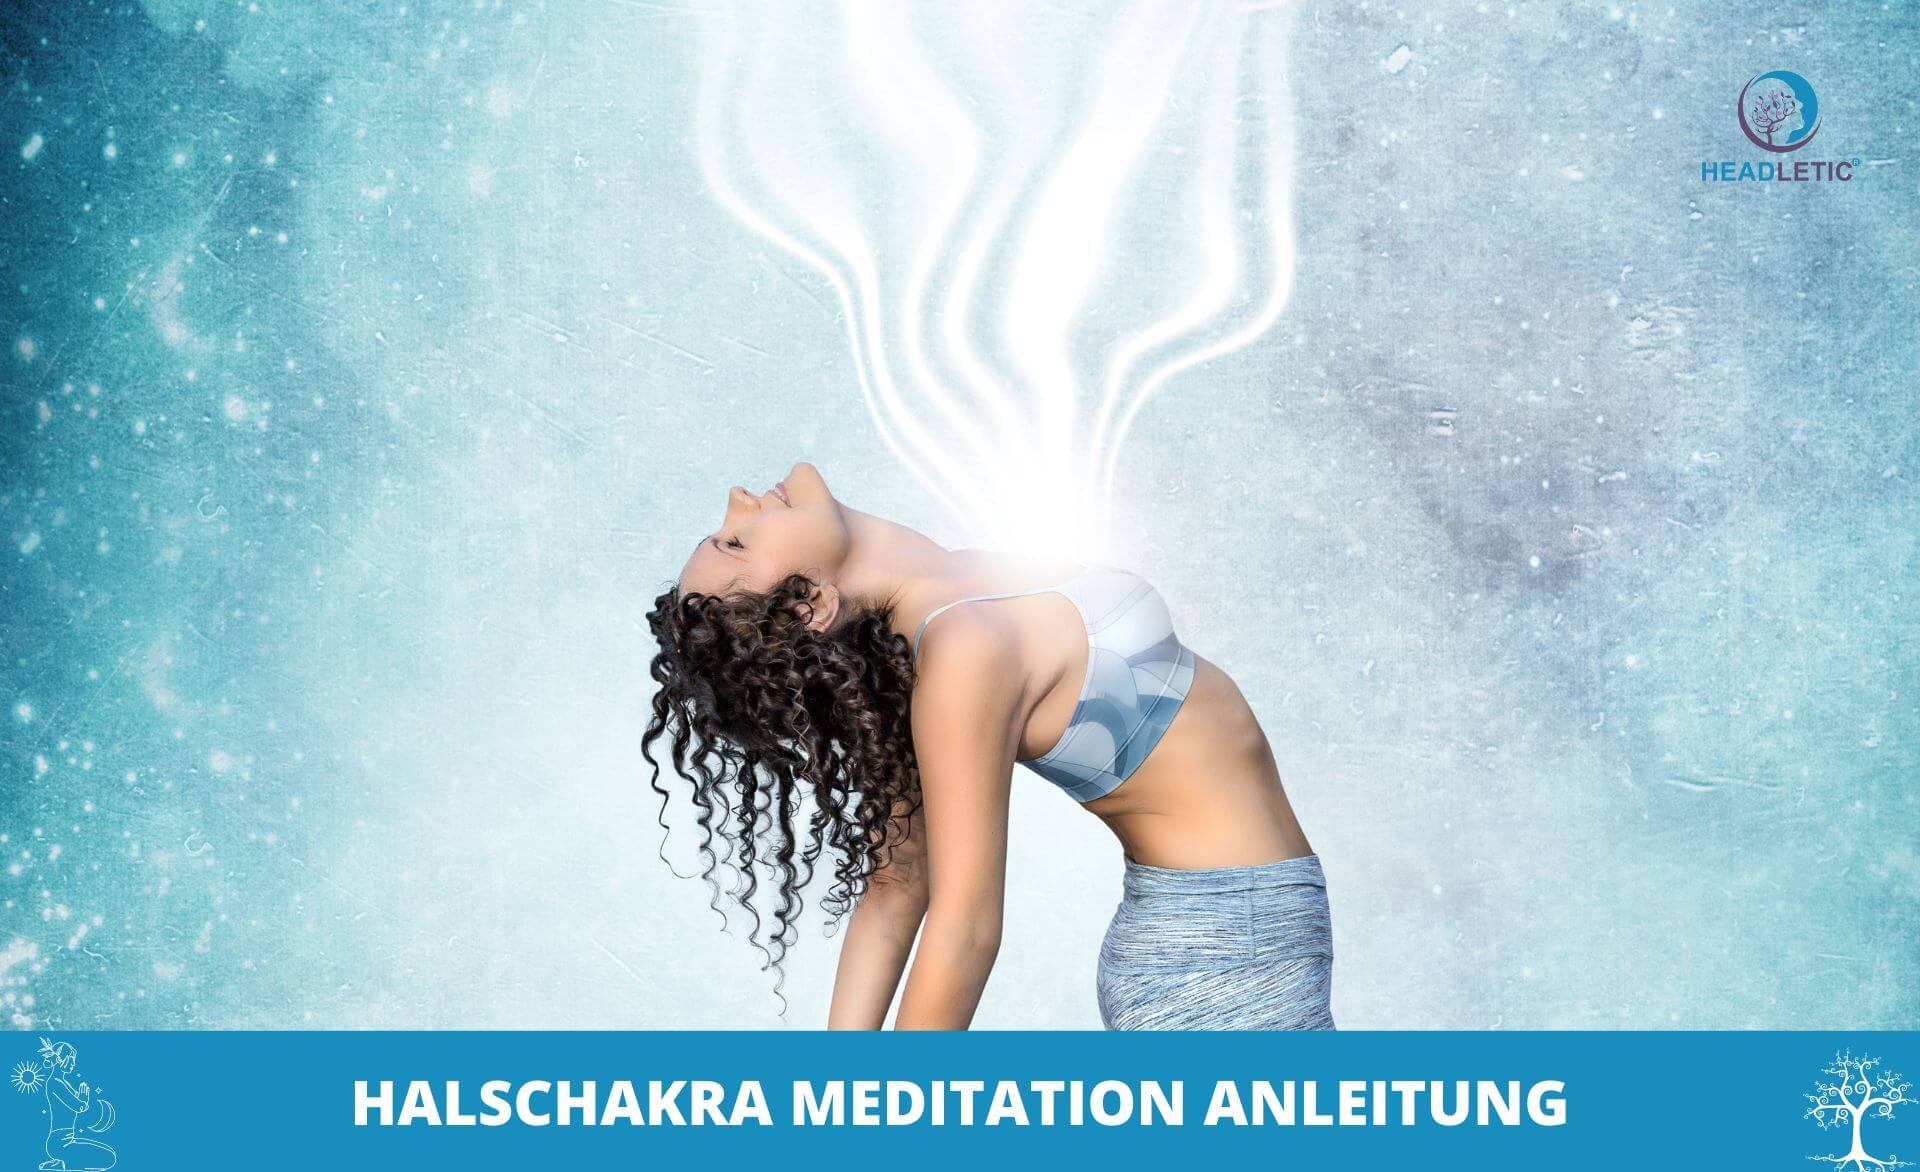 Anleitung für die Öffnung des Halschakras während der Halshaka-Meditation.